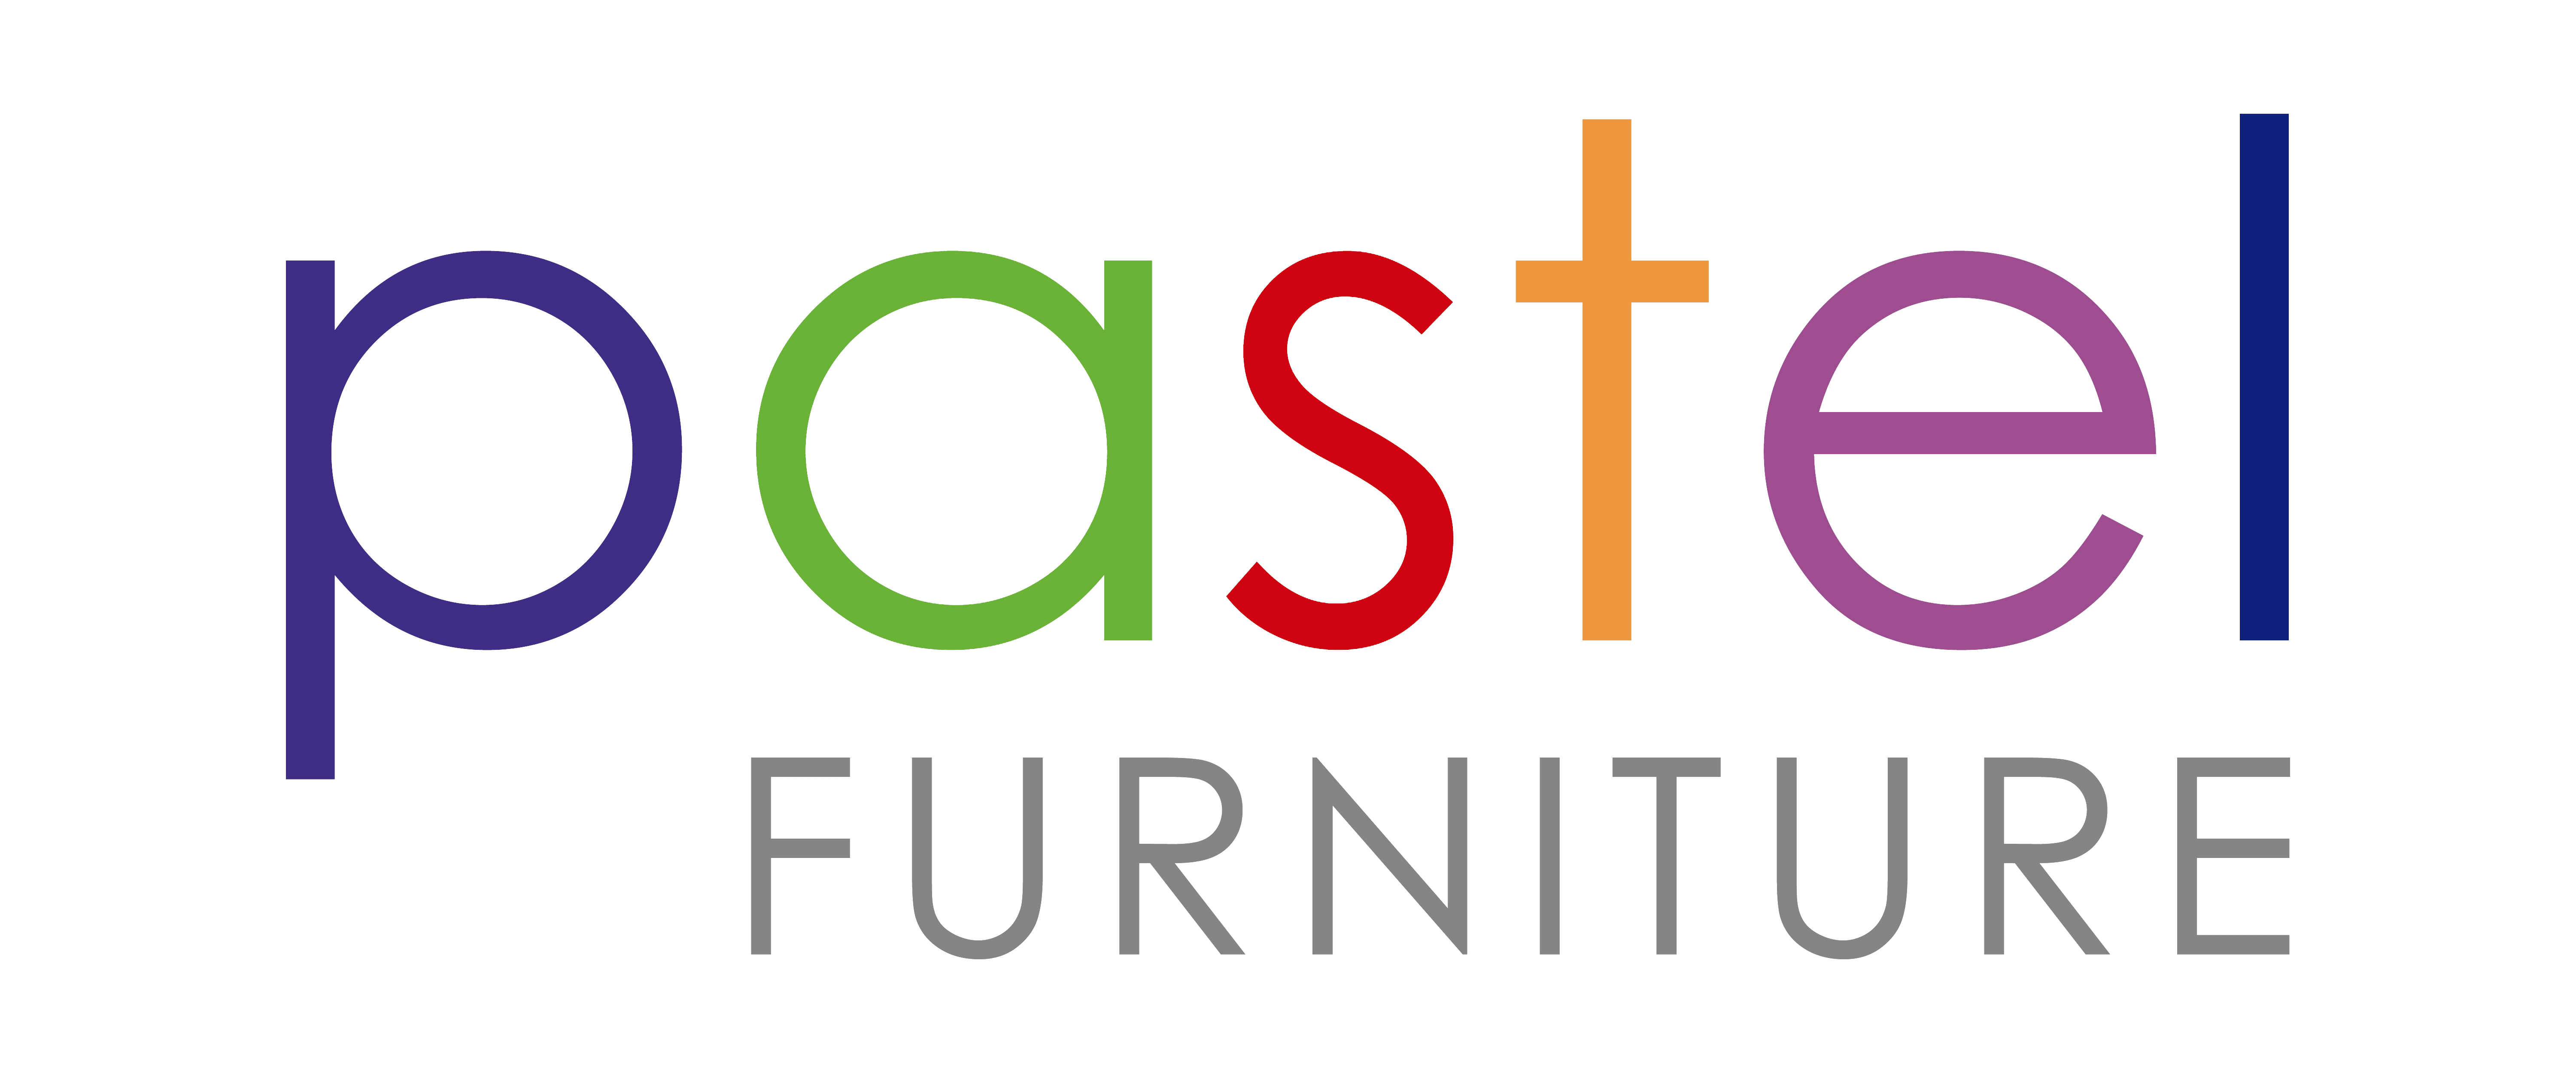 Pastel Furniture Logo - Home - Pastel Furniture